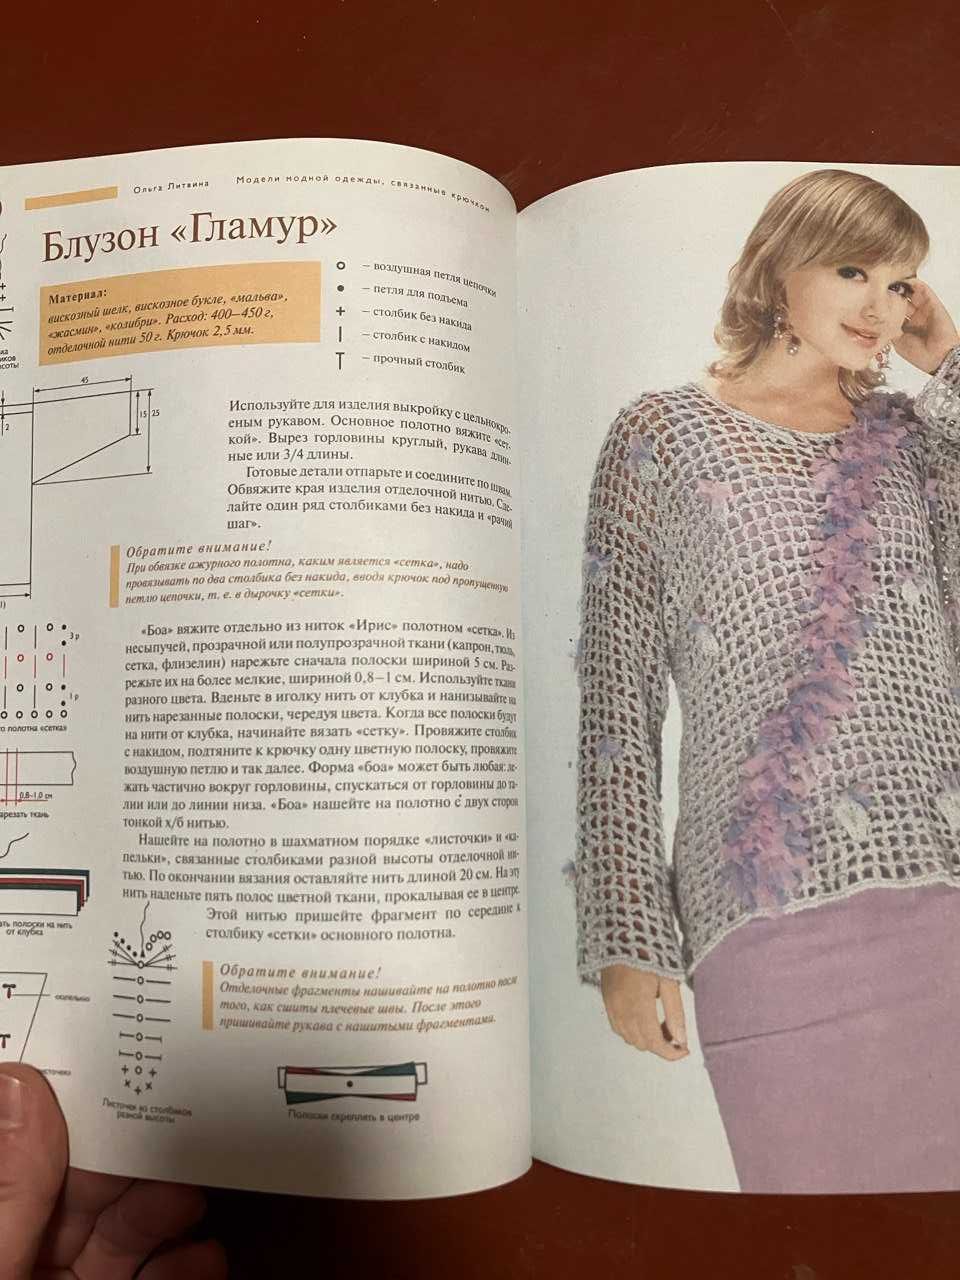 Ольга Литвина "Модели модной одежды, связанные крючком"